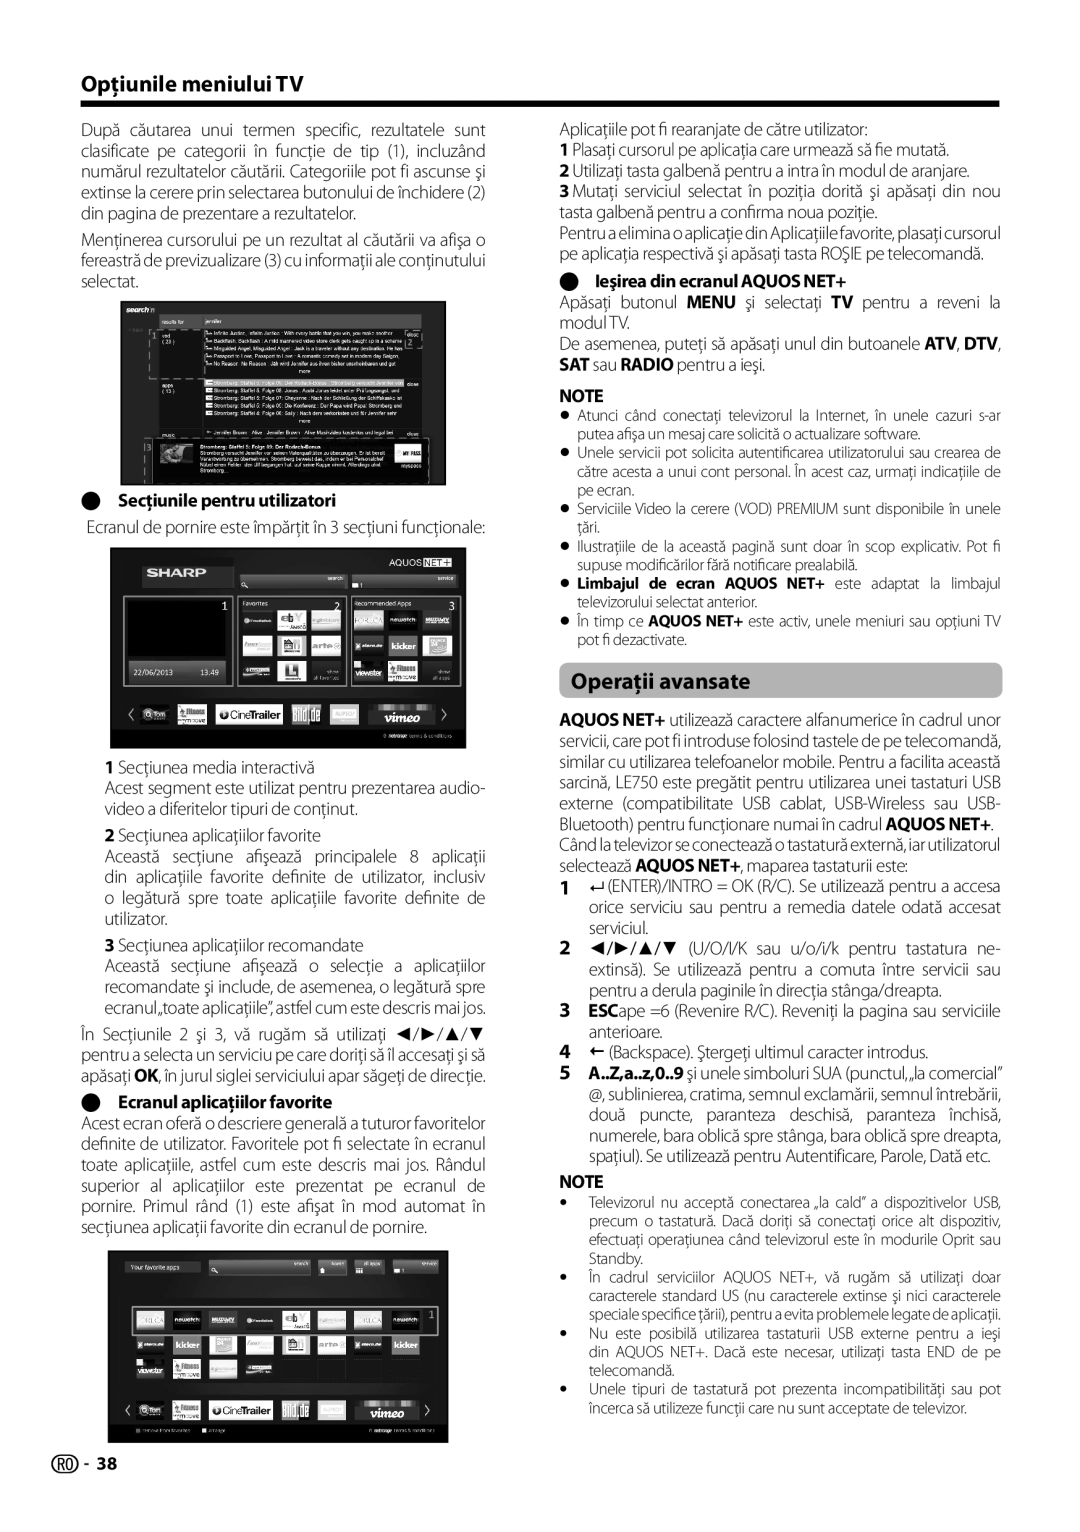 Sharp LC-39LE751E/K/V, LC-70LE754E, LC-70LE752E Opţiunile meniului TV, Operaţii avansate, E Secţiunile pentru utilizatori 